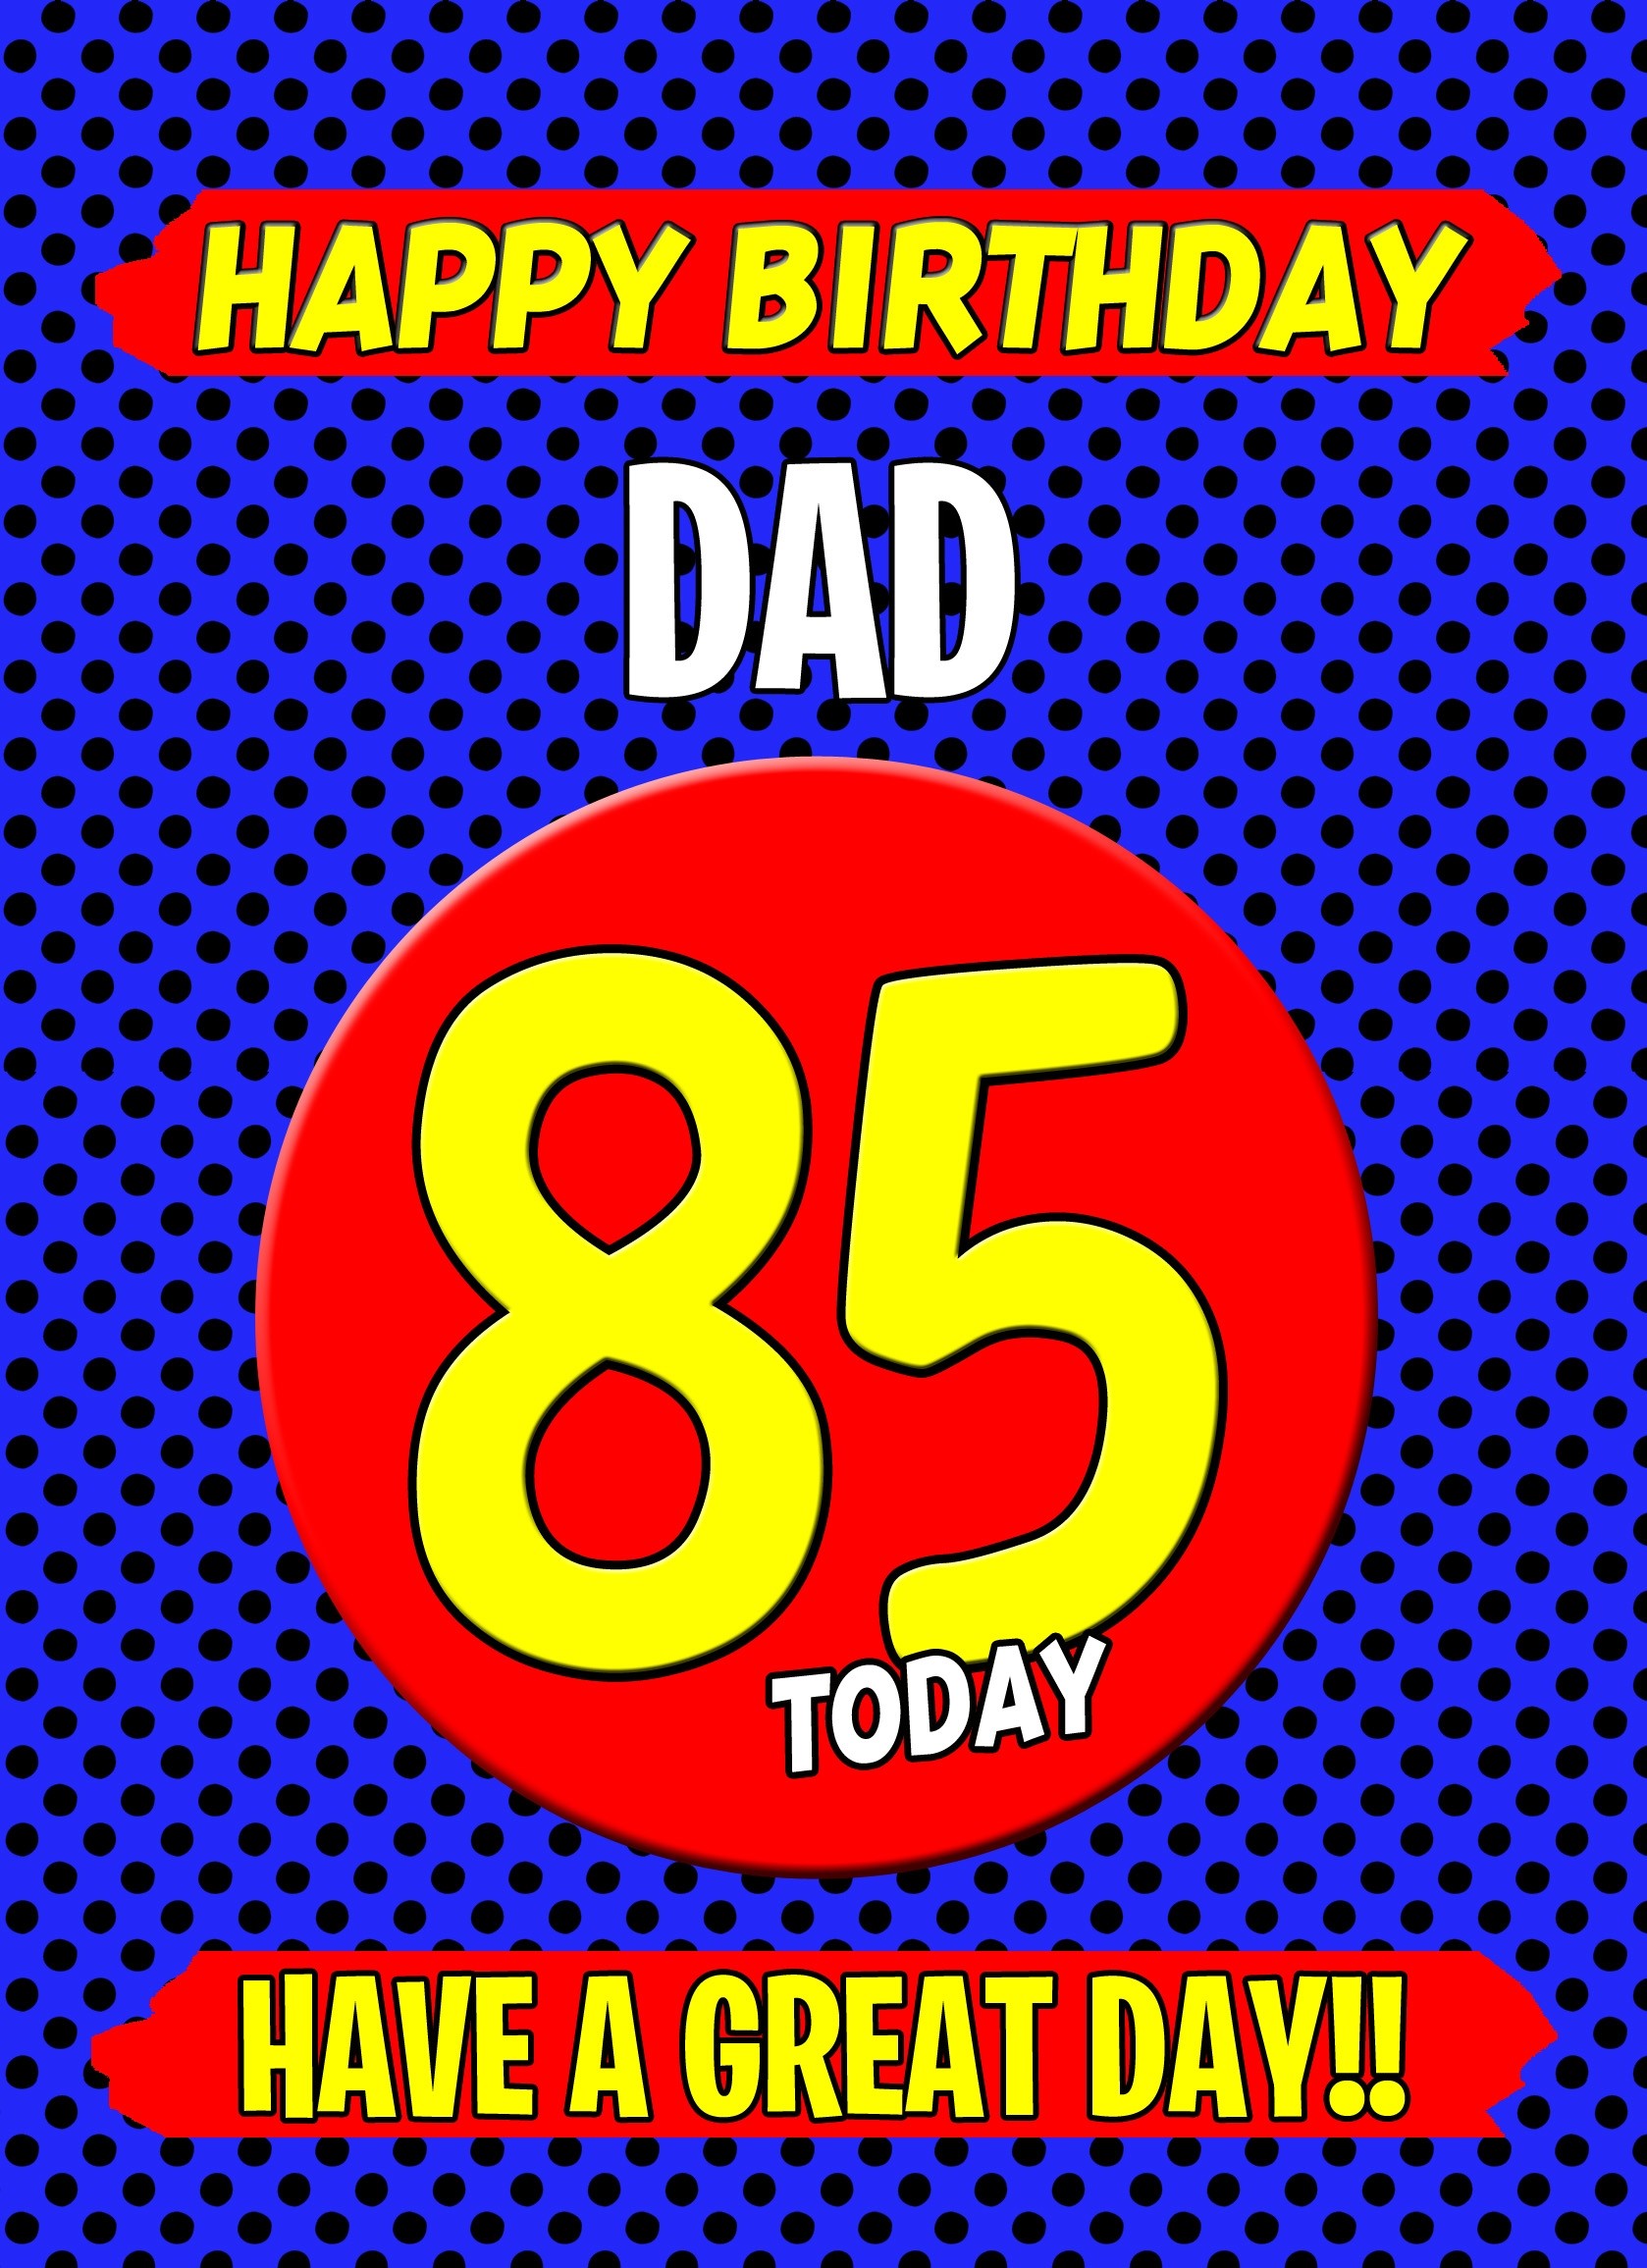 Dad 85th Birthday Card (Blue)